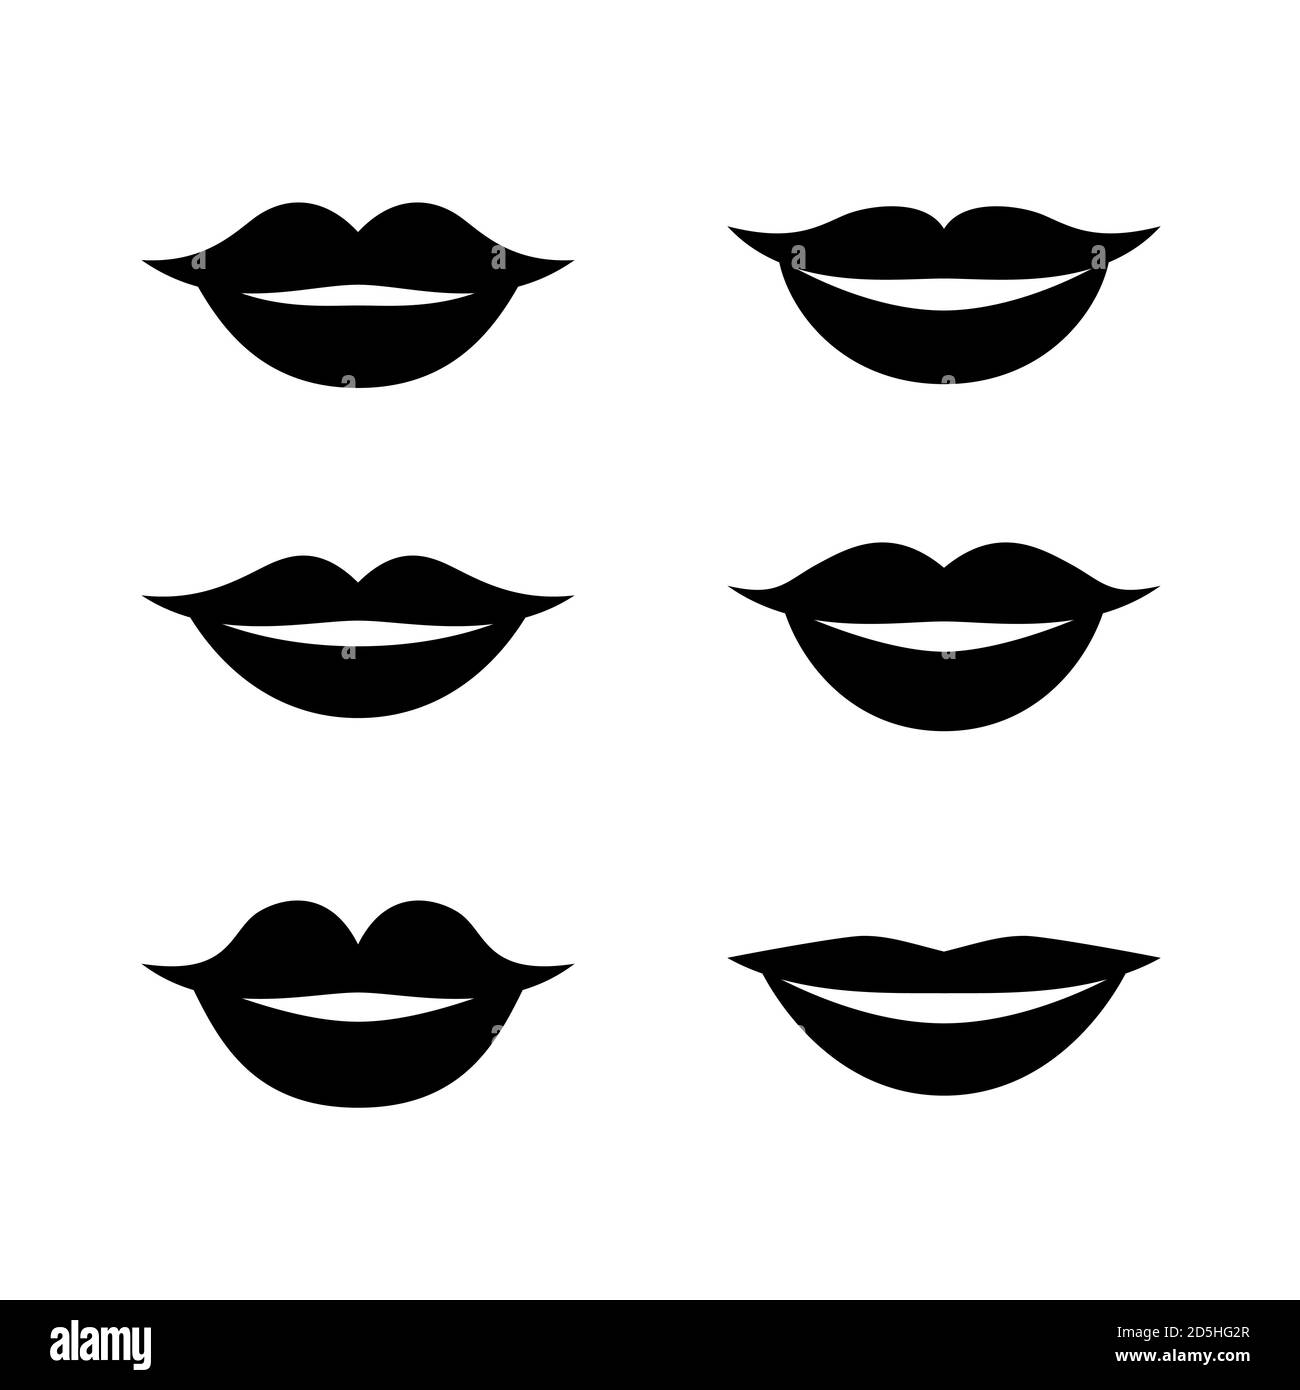 Conjunto blanco y negro de diferentes labios felices masculinos y femeninos. Asia, Europa, dibujos animados africanos bocas simples, variaciones de forma de sonrisas. Ilust vector Ilustración del Vector